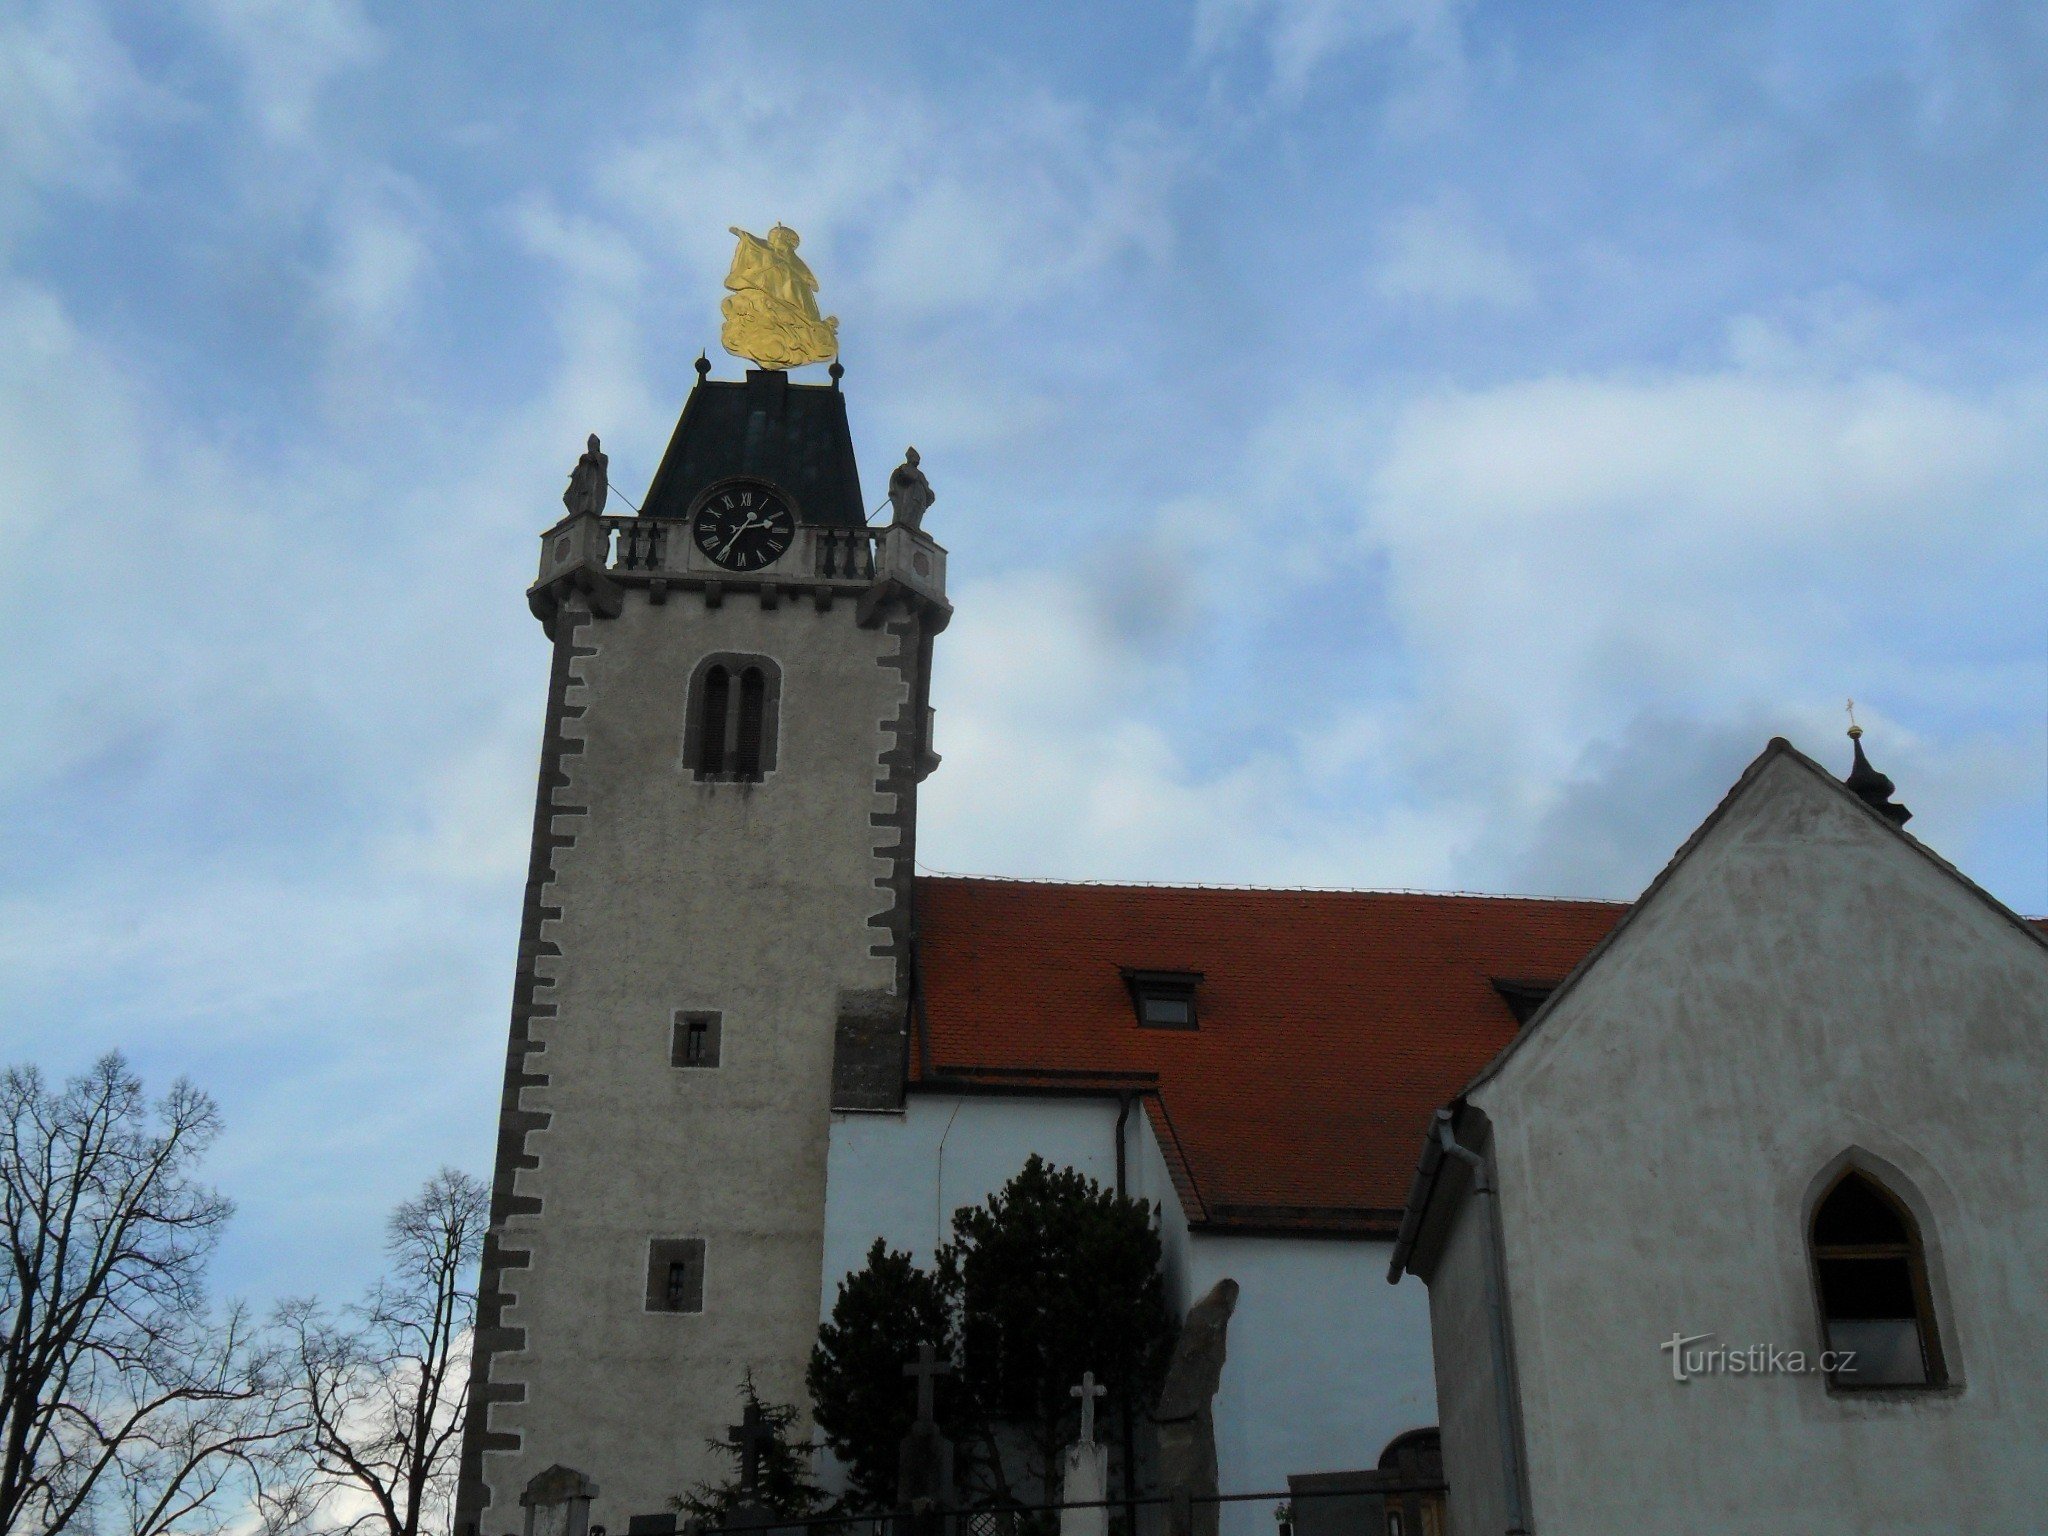 St. Gothard ima prenovljenega